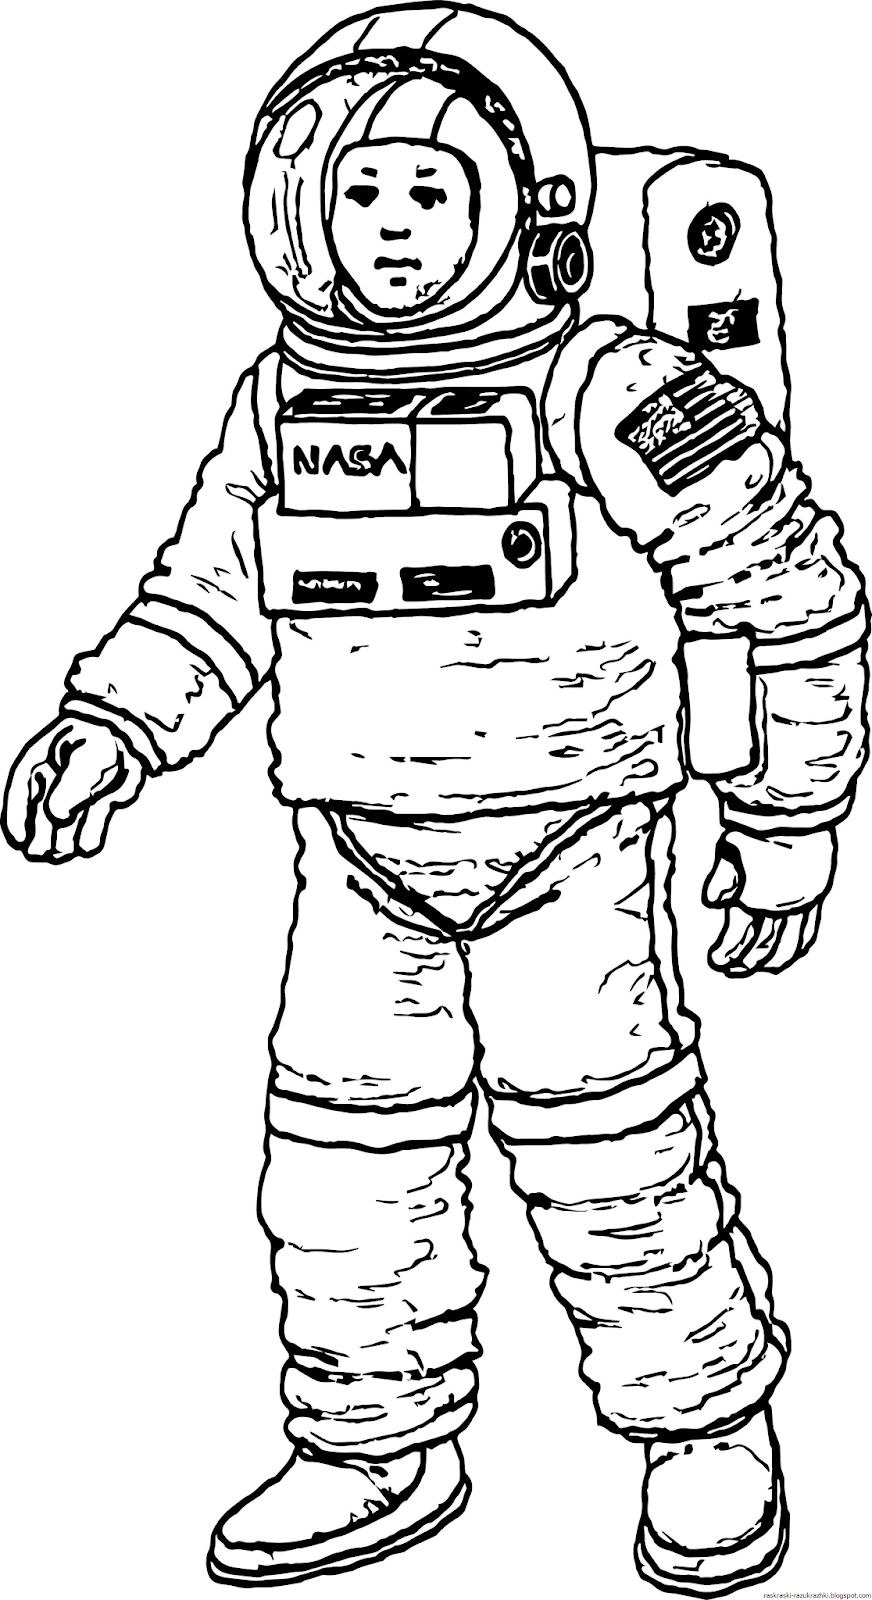 Рисунок космонавта в скафандре. Космонавт раскраска для детей. Раскраска про космос и Космонавтов для детей. Космонавт рисунок. Рисунок Космонавта в скафандре для детей.